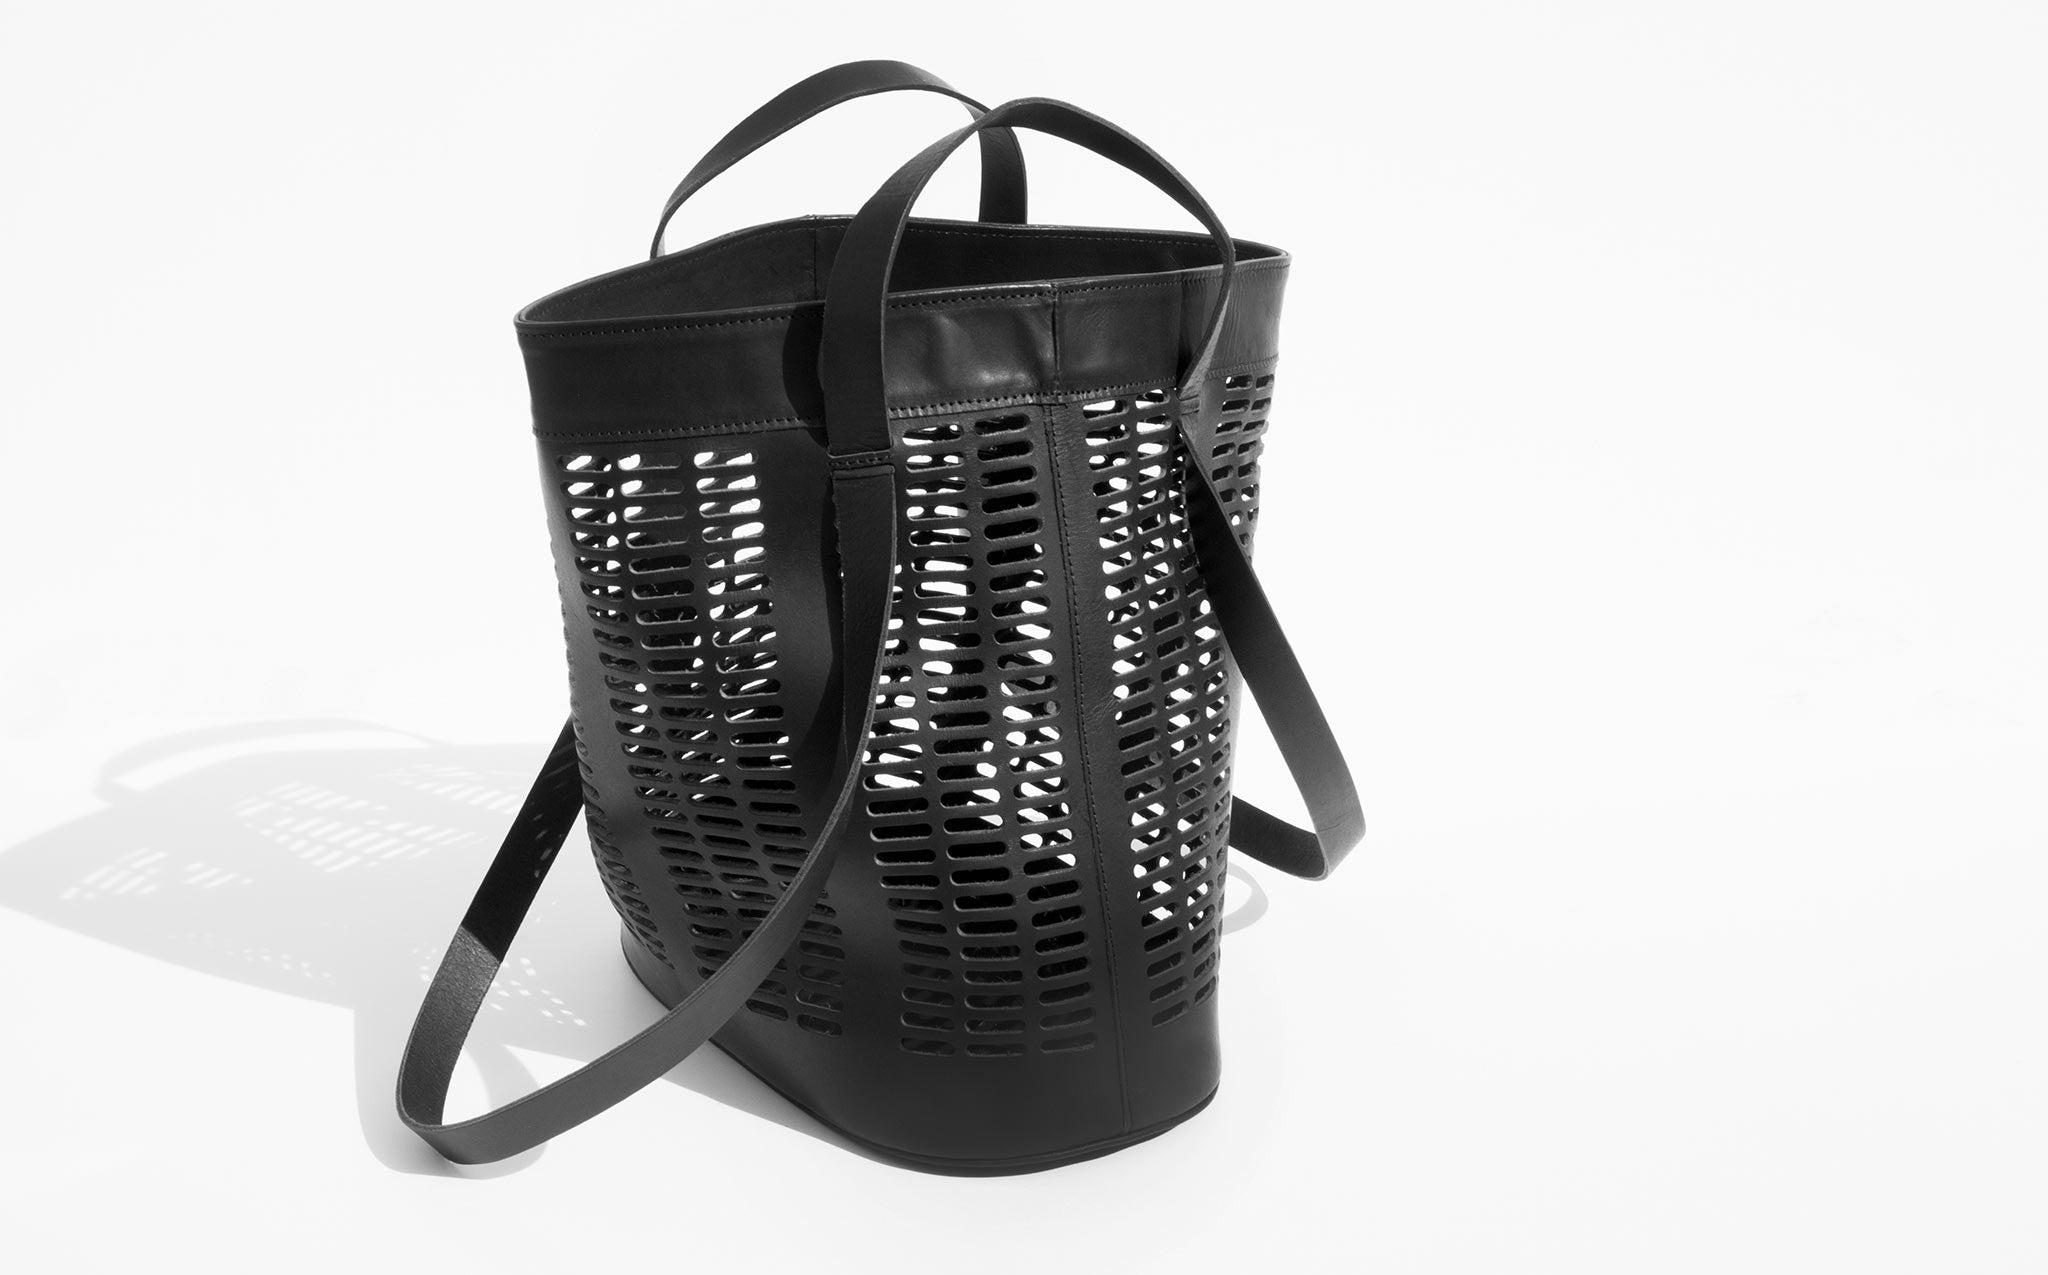 Modern Weaving Black Infinity Handle Basket Tote